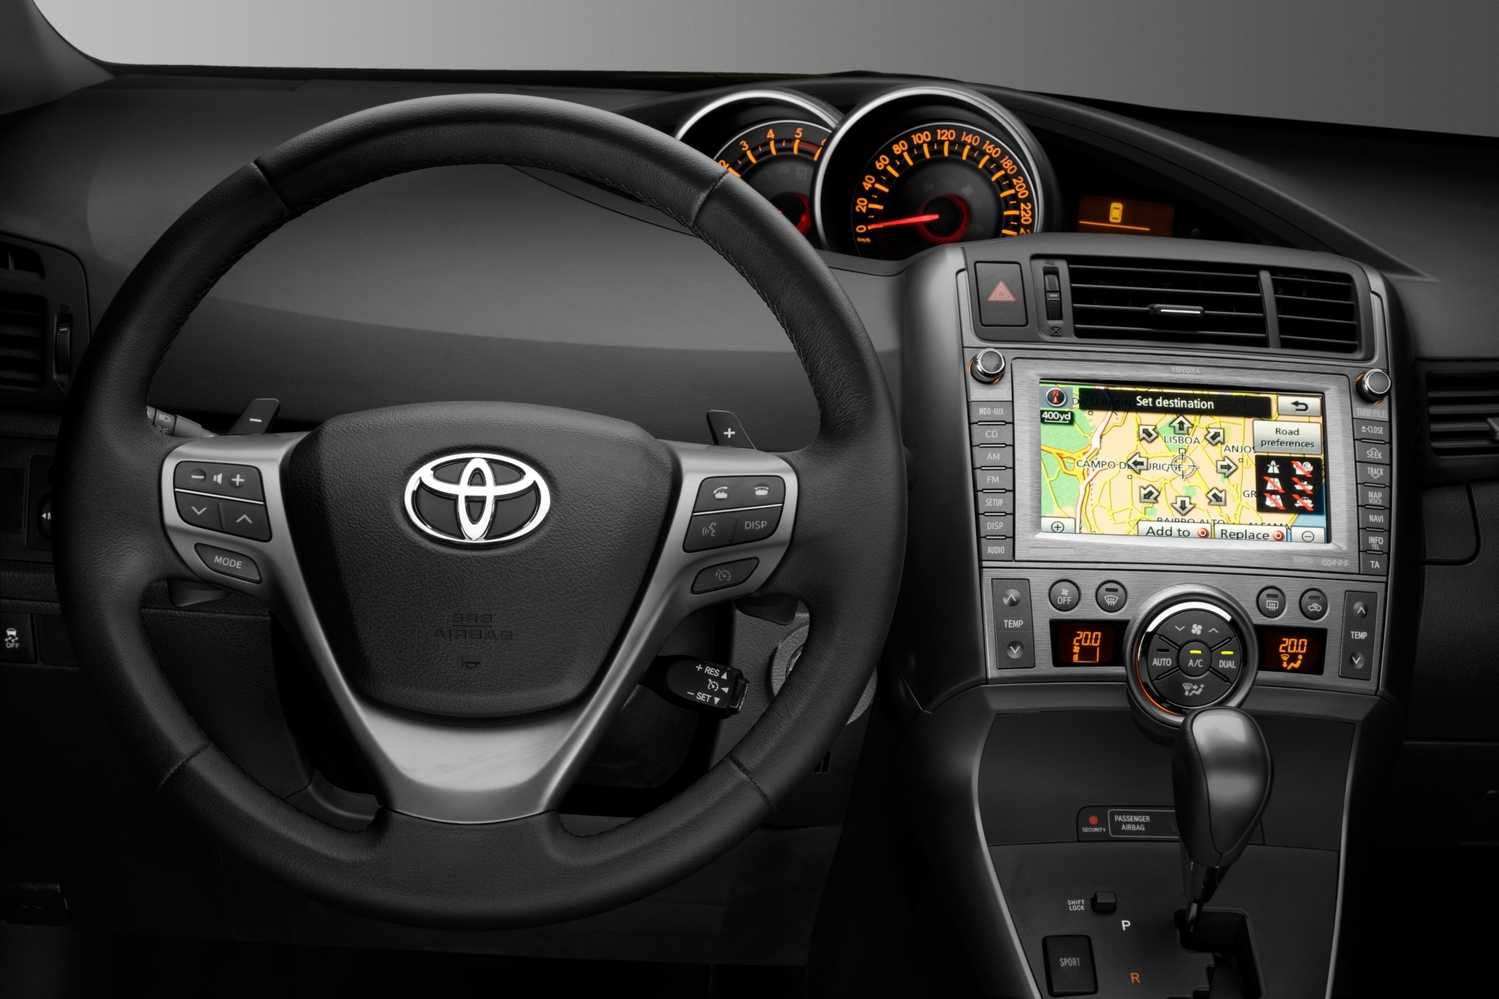 Toyota proace verso electric 2021: электрический компактвэн в пассажирской и грузовой комплектациях